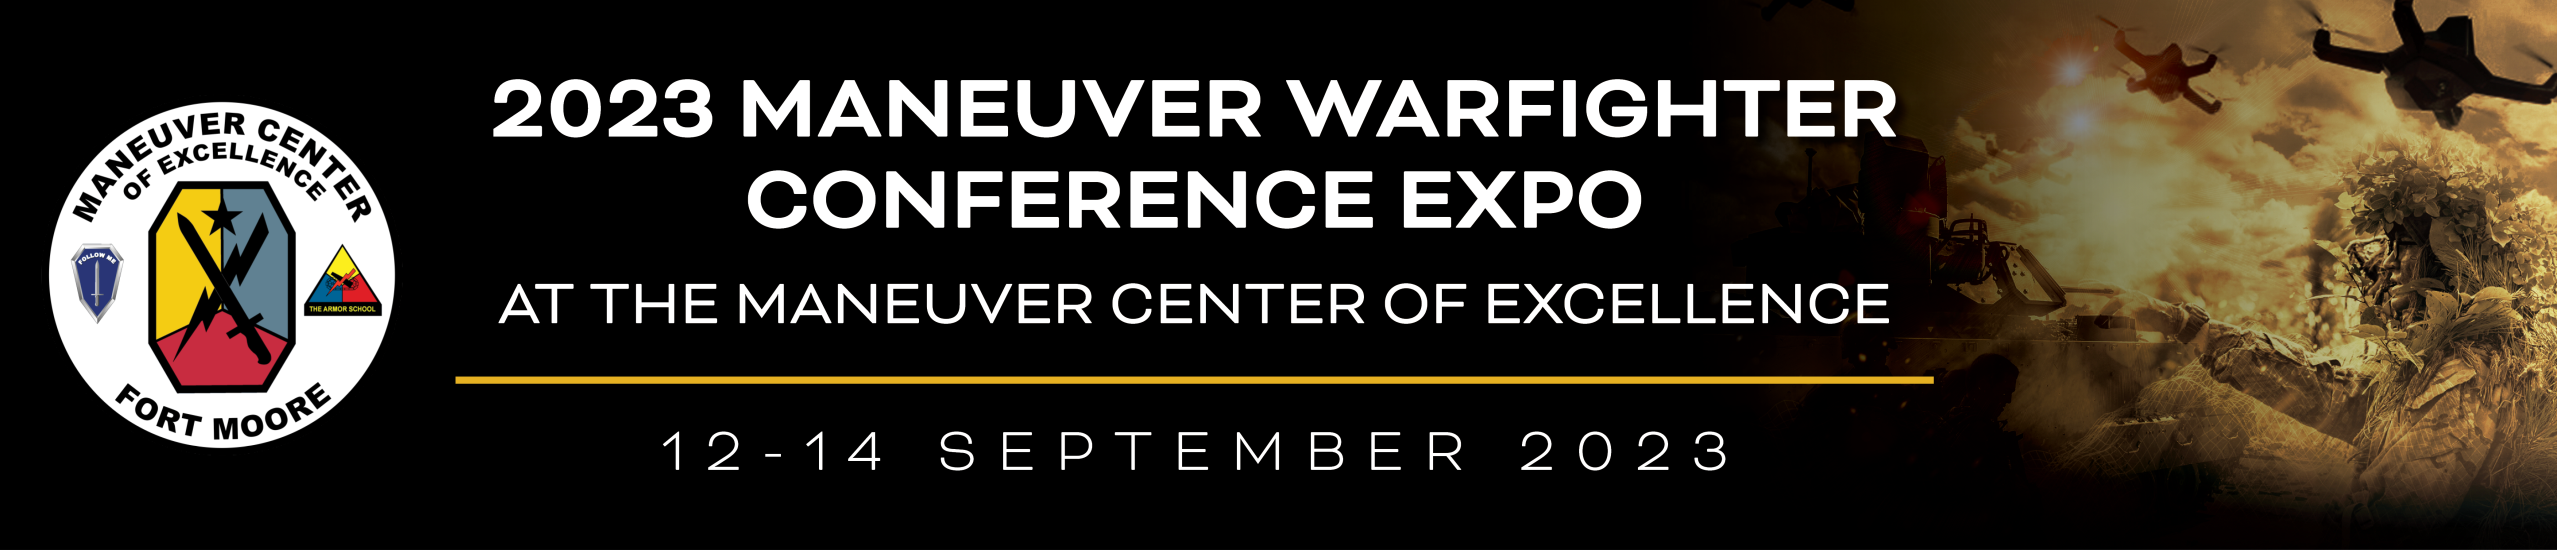 Fort Benning Maneuver Warfighter Conference